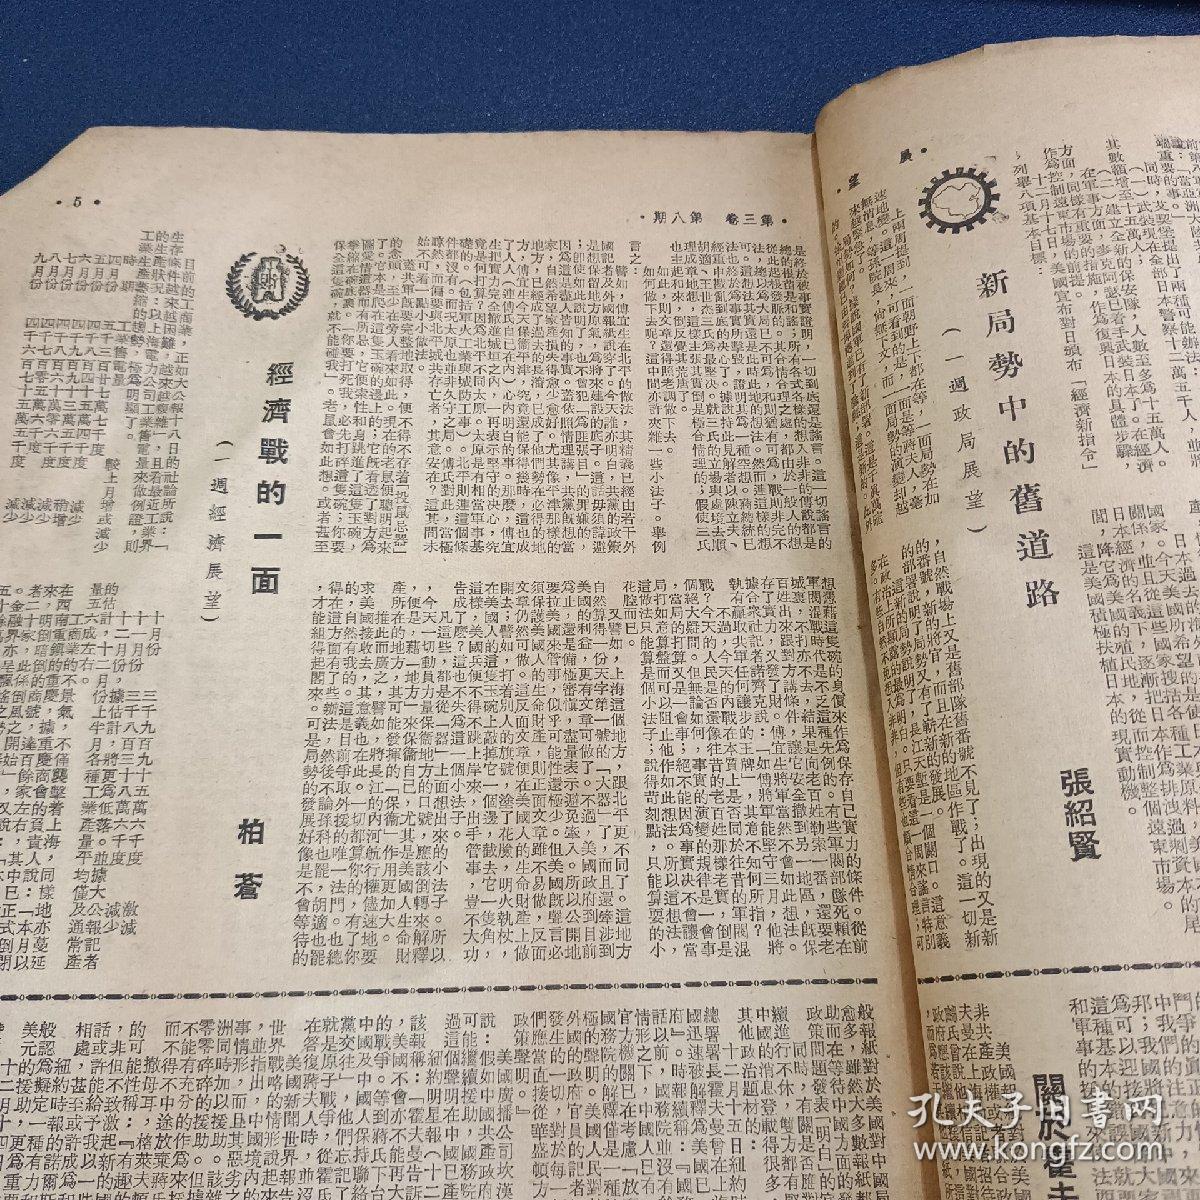 民国期刊 展望（1948年12月第8期）有平津作战内容